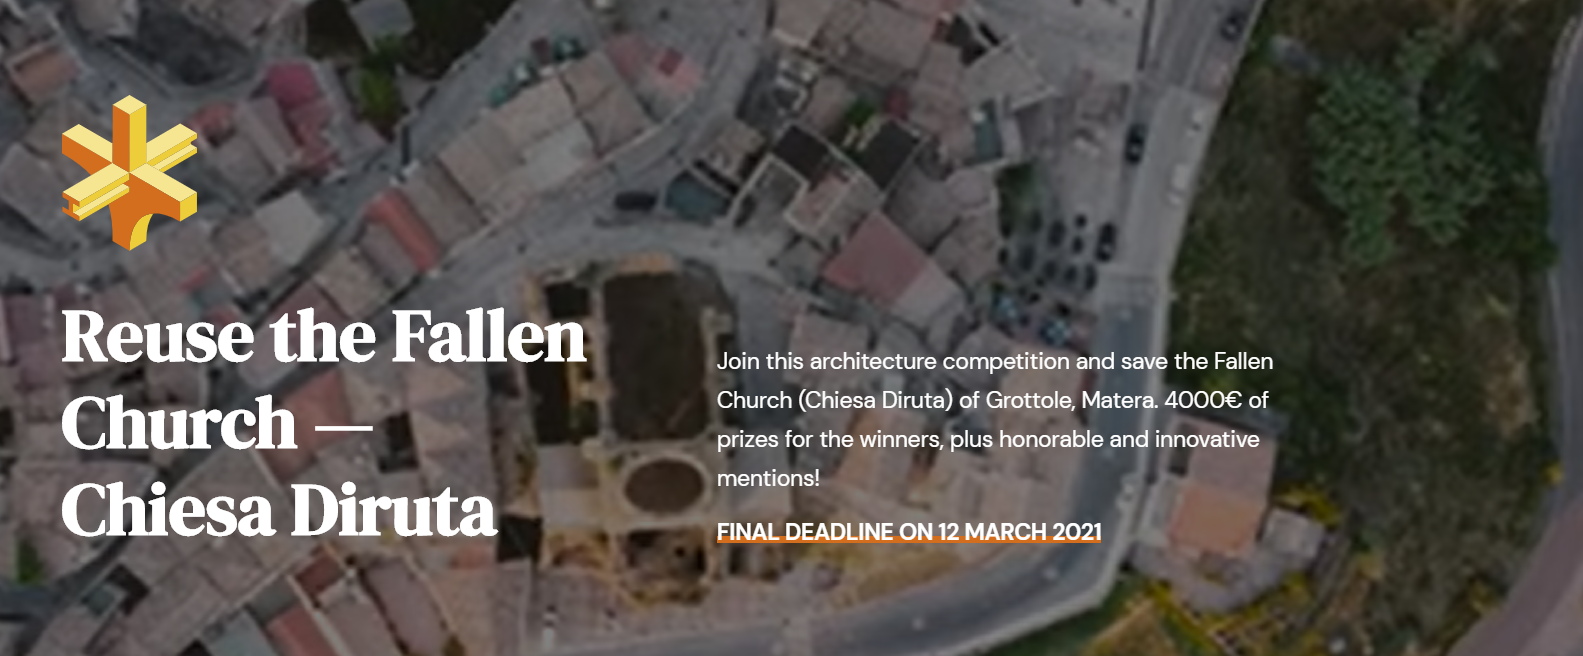 重塑坍塌教堂 — Chiesa Diruta